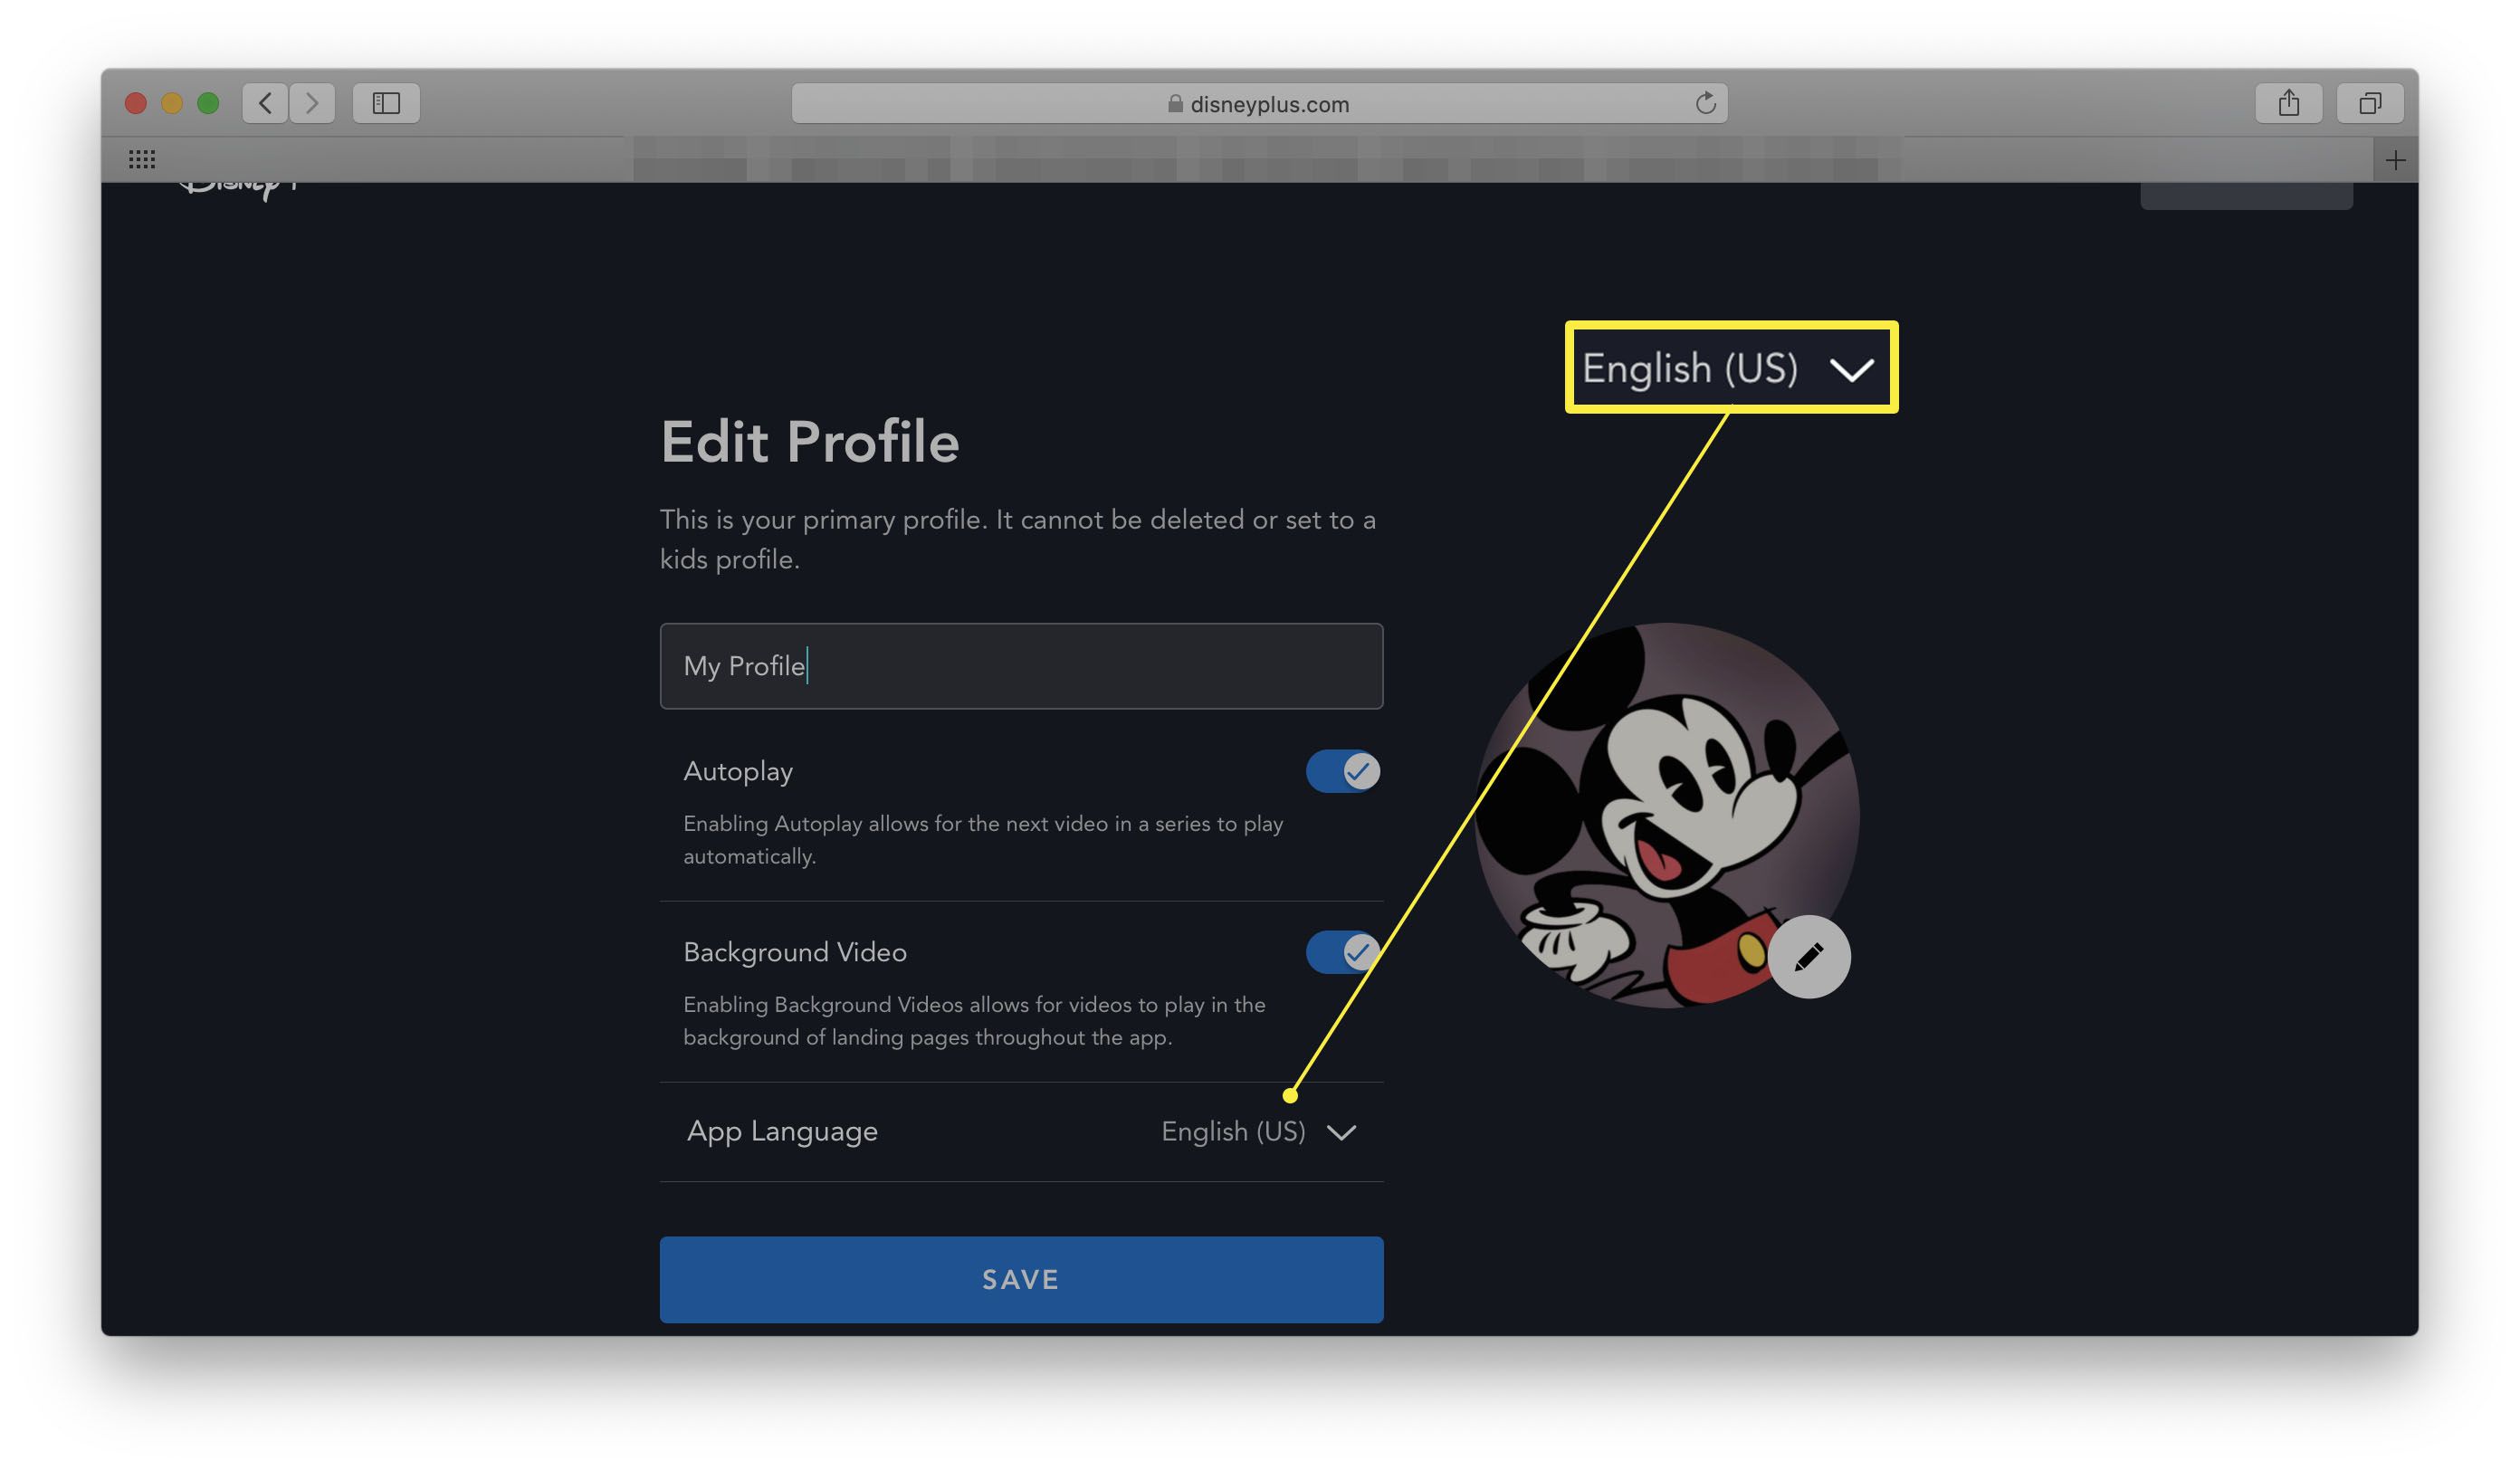 Disney + -webbplats med Redigera profil öppen och App-språk markerat